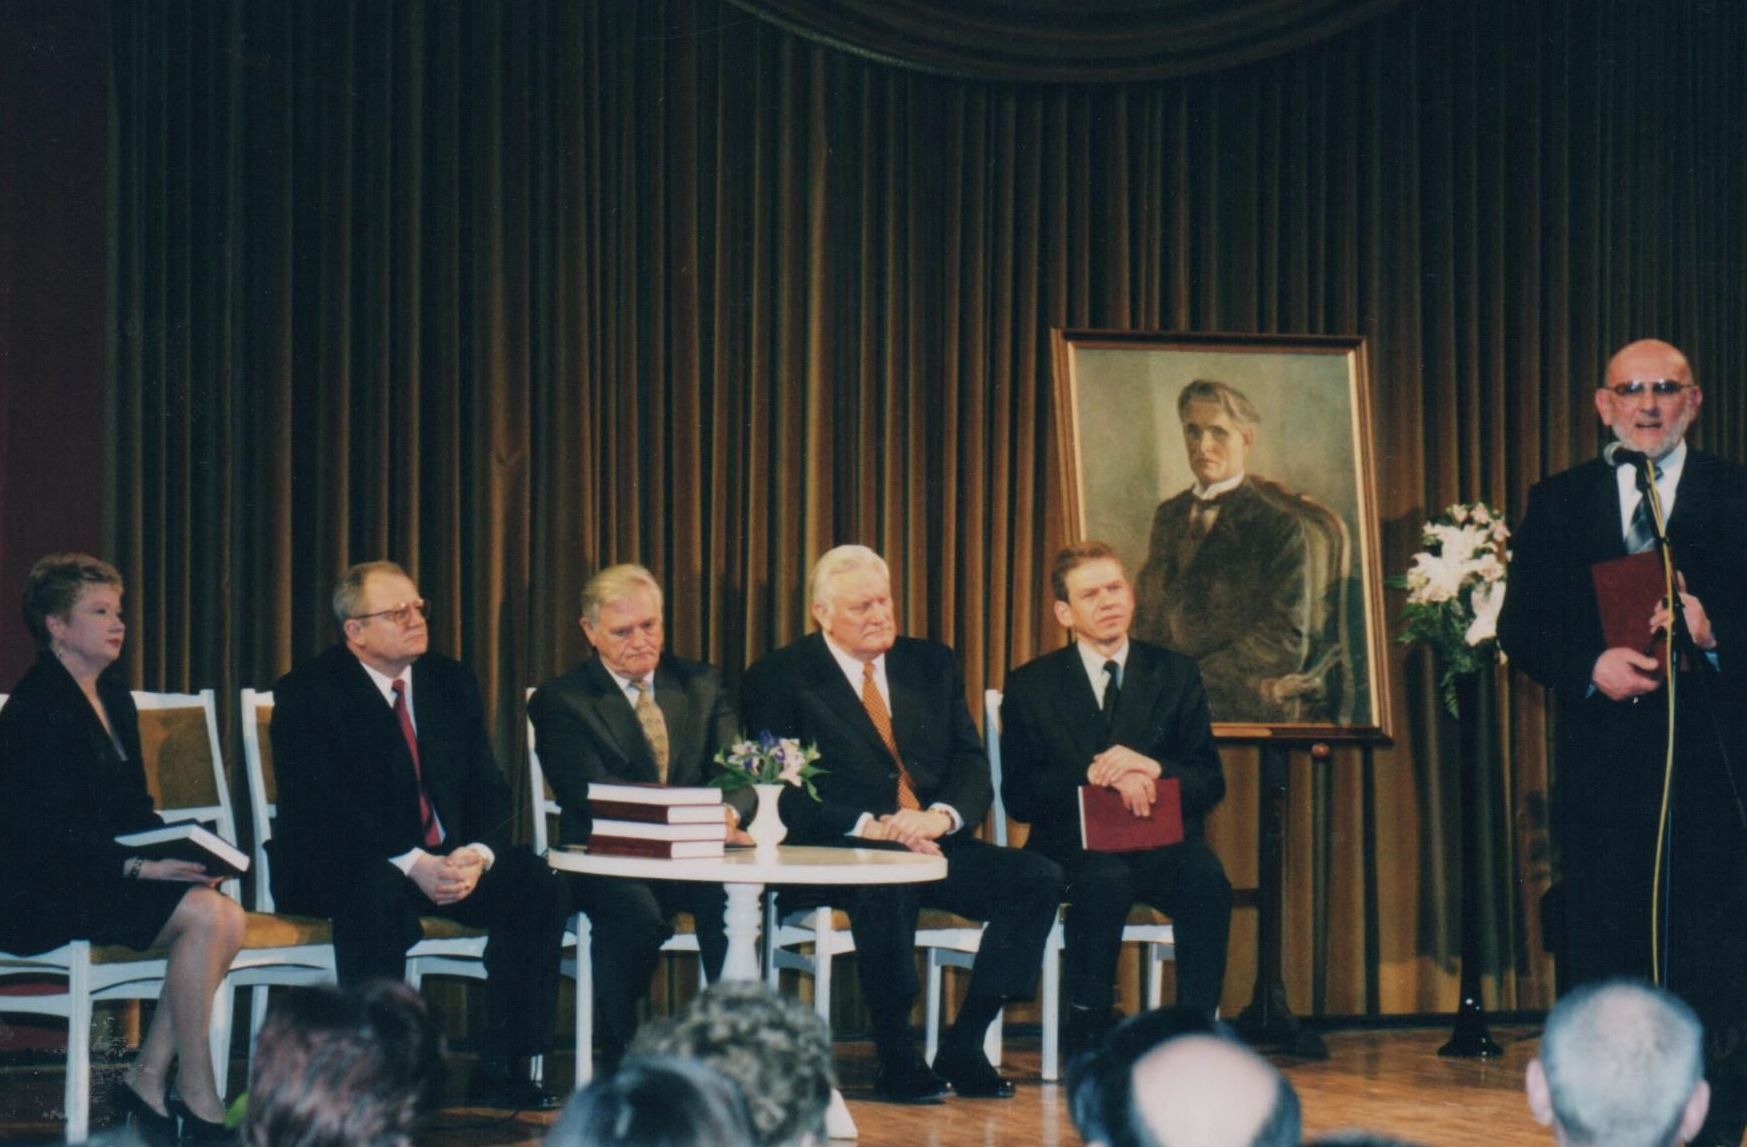 2000 m. kovo 22 d. Vilniaus Rotušėje vyko G. Ilgūno knygos „Kazys Grinius“ pristatymas. Į pristatymą atvyko LR. Prezidentai V. Adamkus ir A. Brazauskas, ambasadorius, istorijos mokslų daktaras A. Eidintas. Kairėje – Rotušės direktorė A. Daučiūnienė.